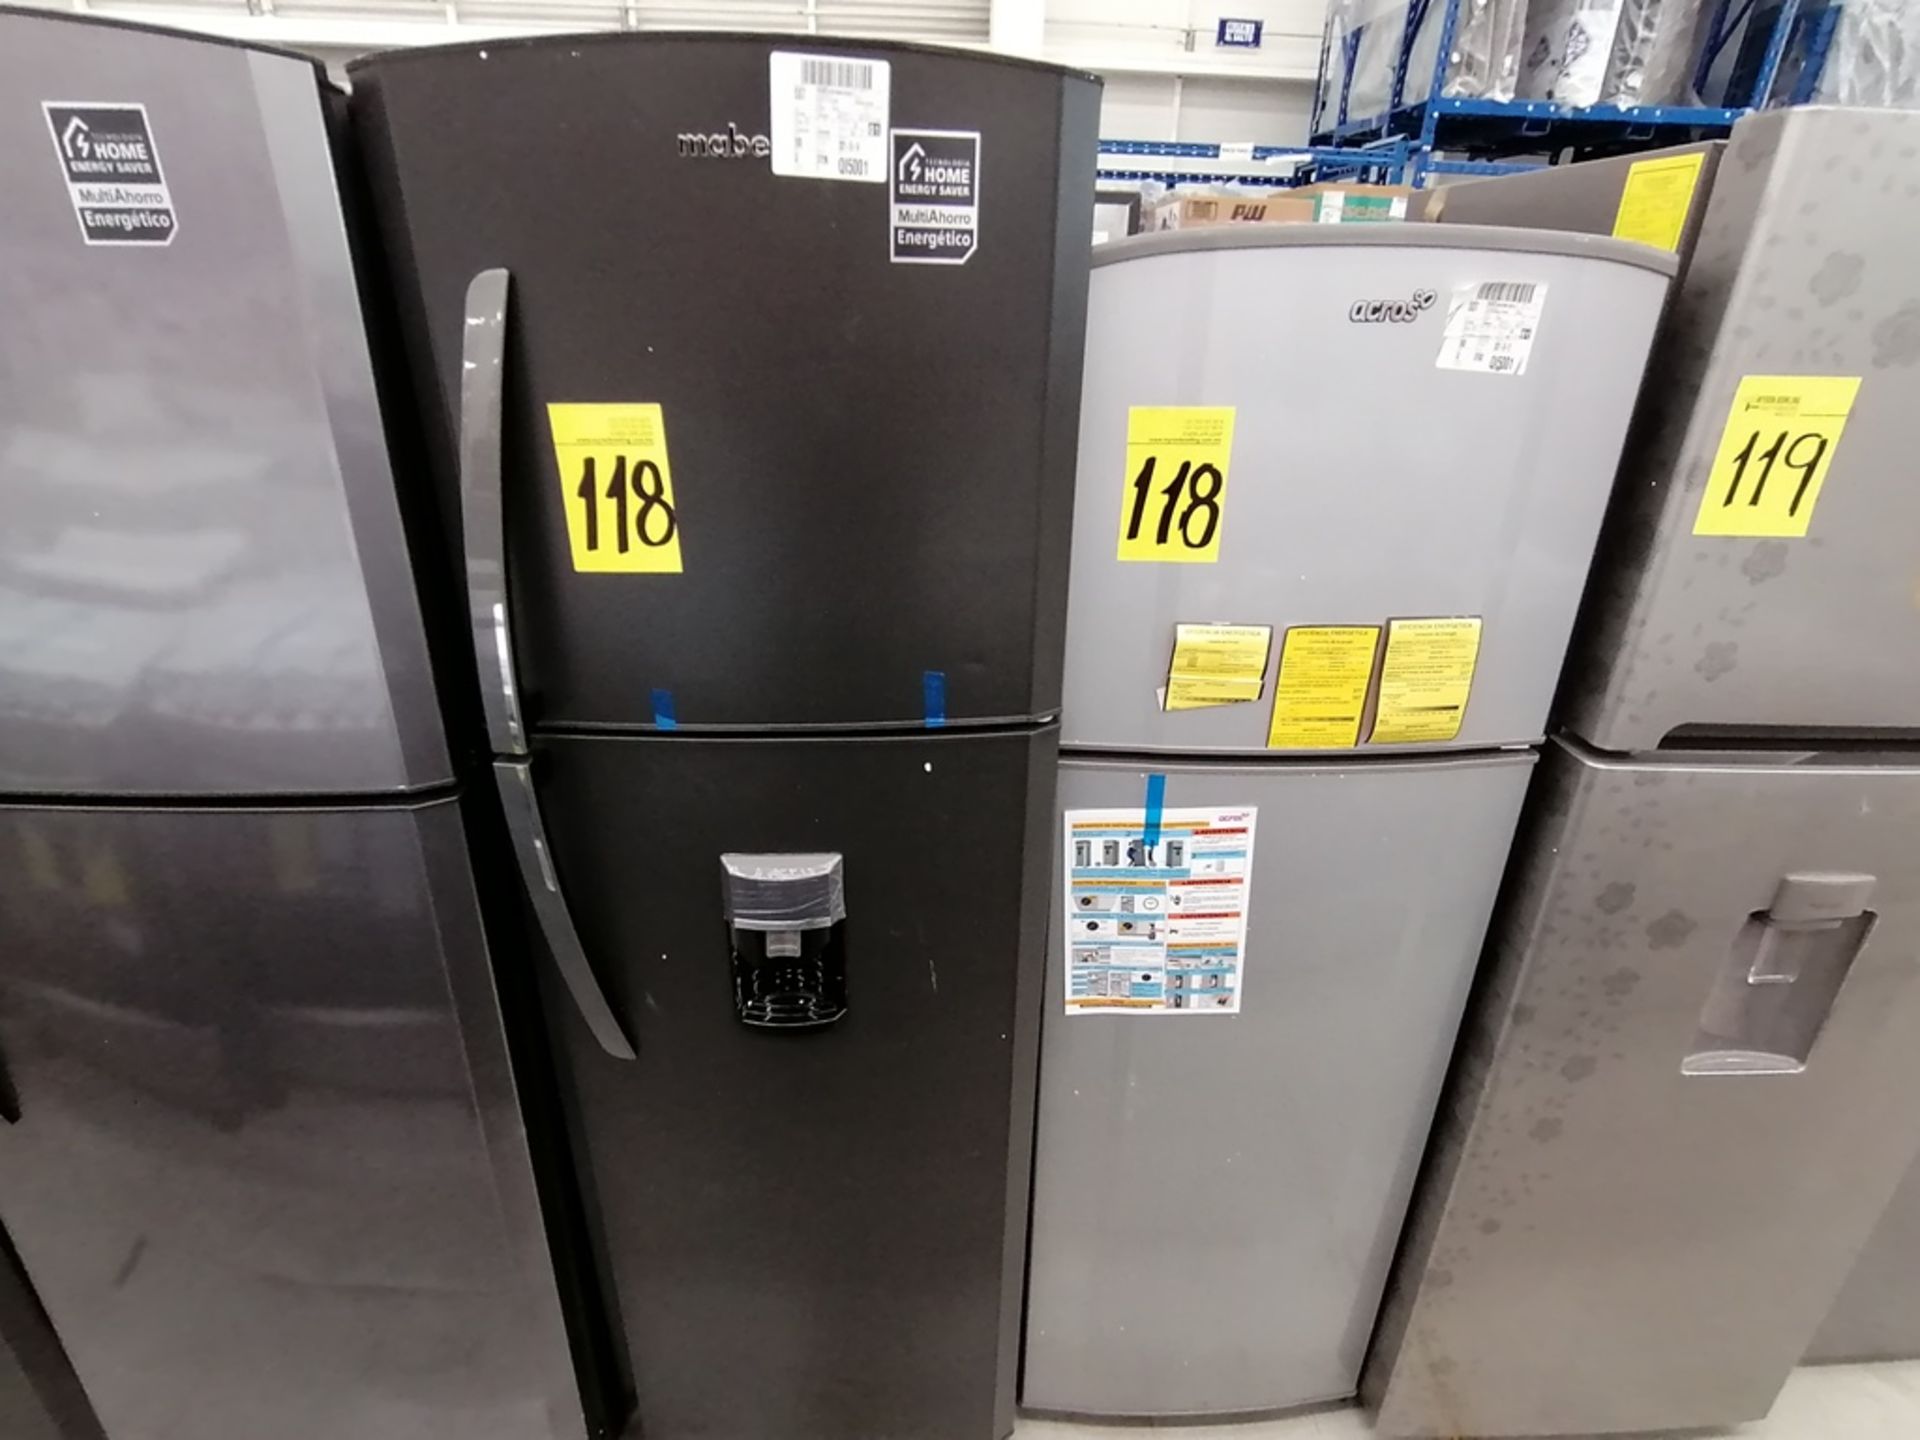 Lote de 2 refrigeradores incluye: 1 Refrigerador con dispensador de agua, Marca Mabe, Modelo RMA300 - Image 10 of 15